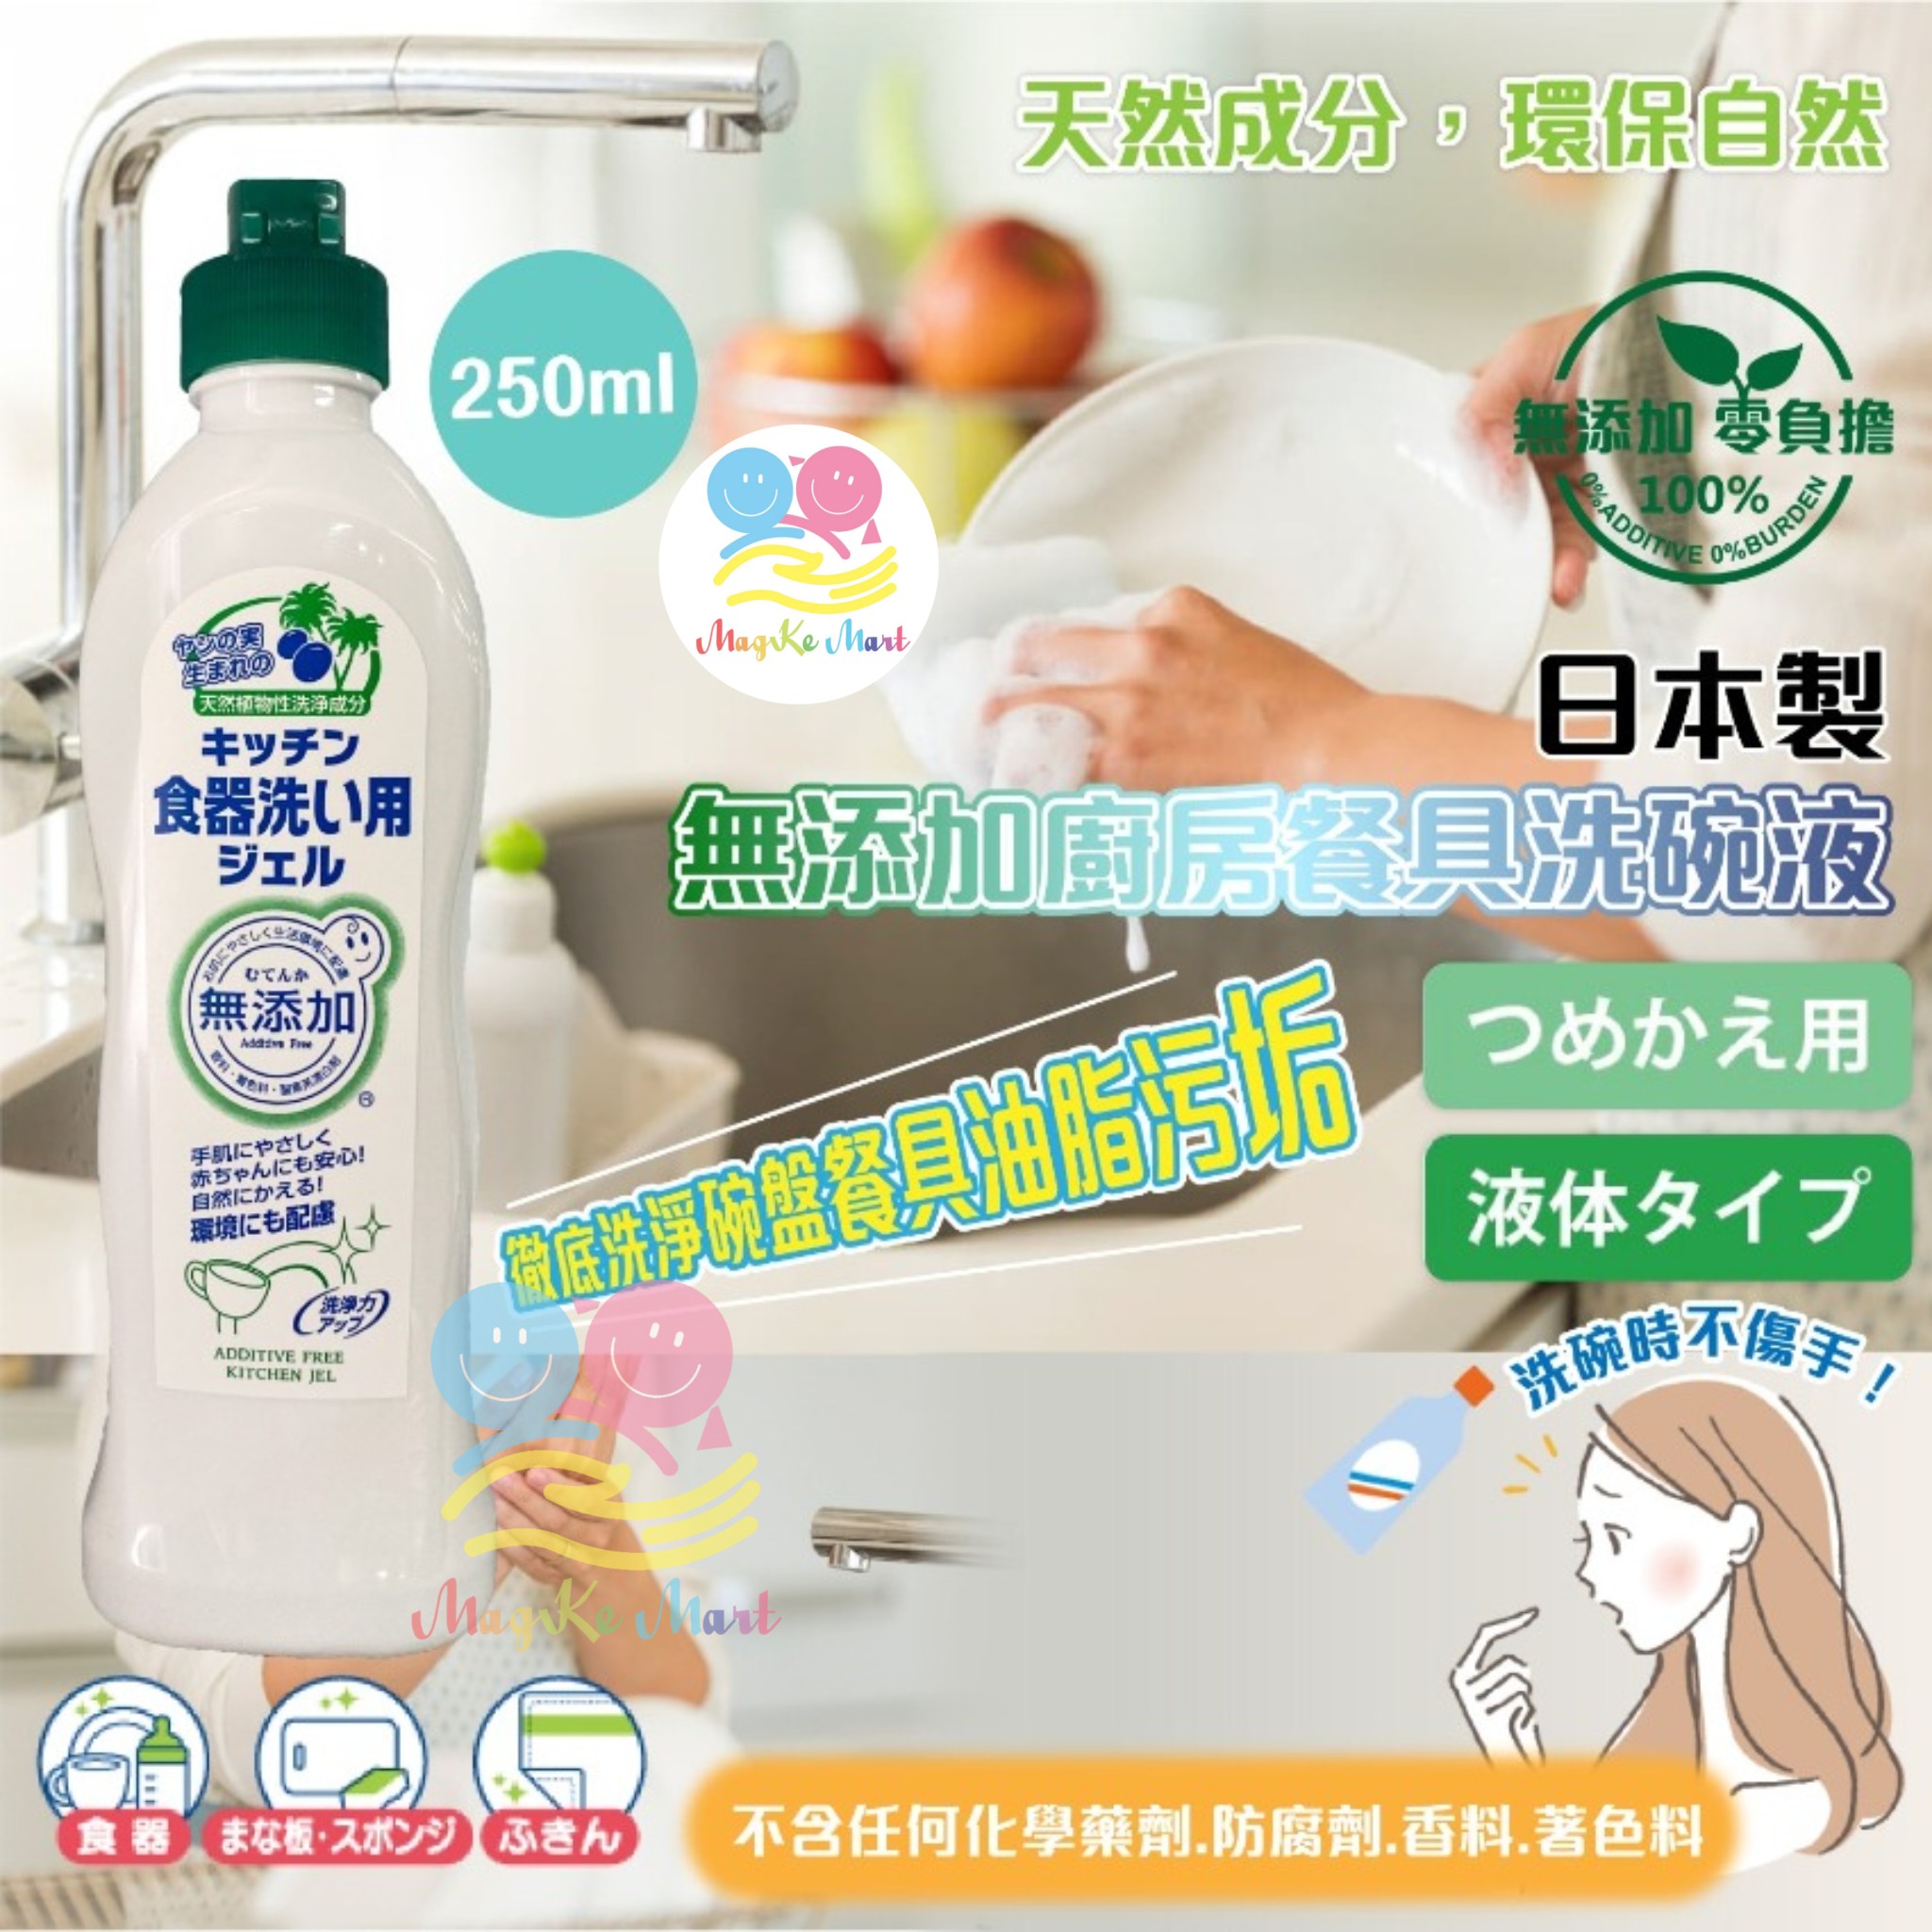 日本製椰子油無添加廚房餐具洗碗液 250ml (1套3支)